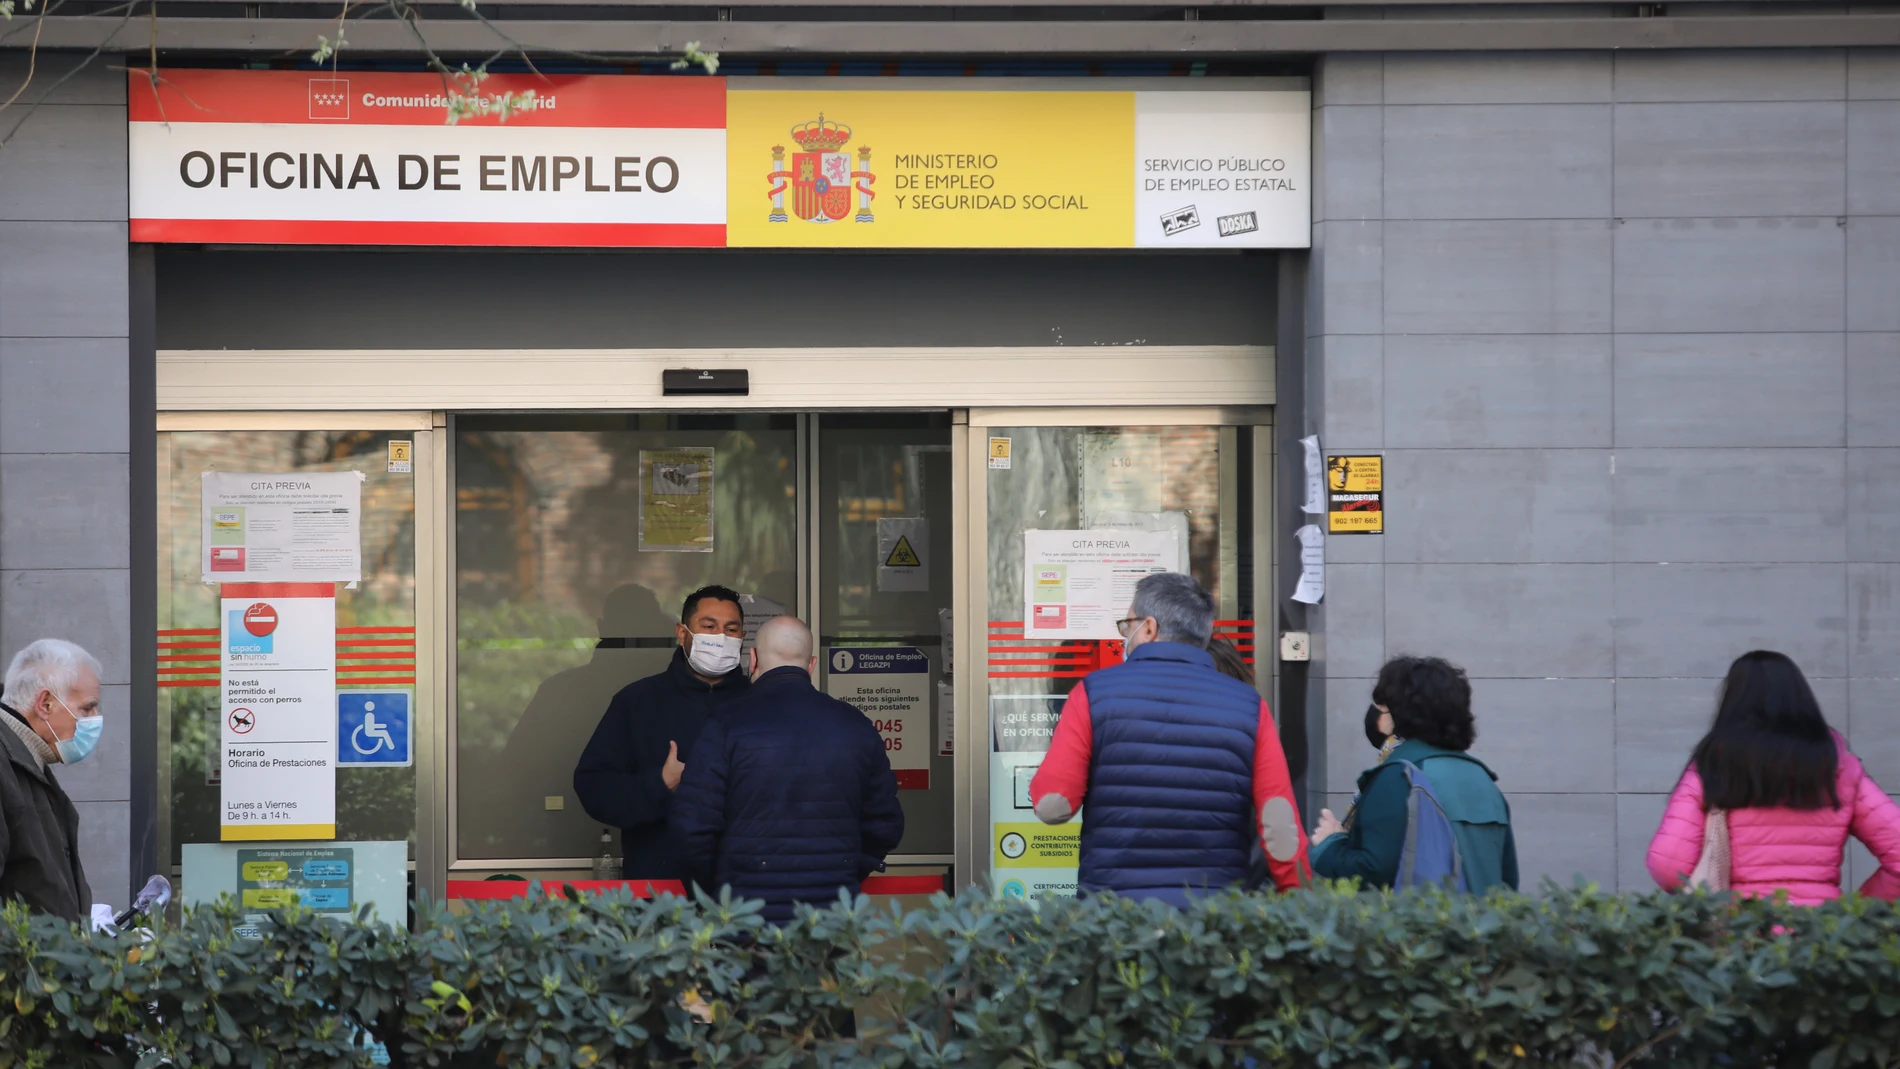 Oficinas de empleo en Madrid